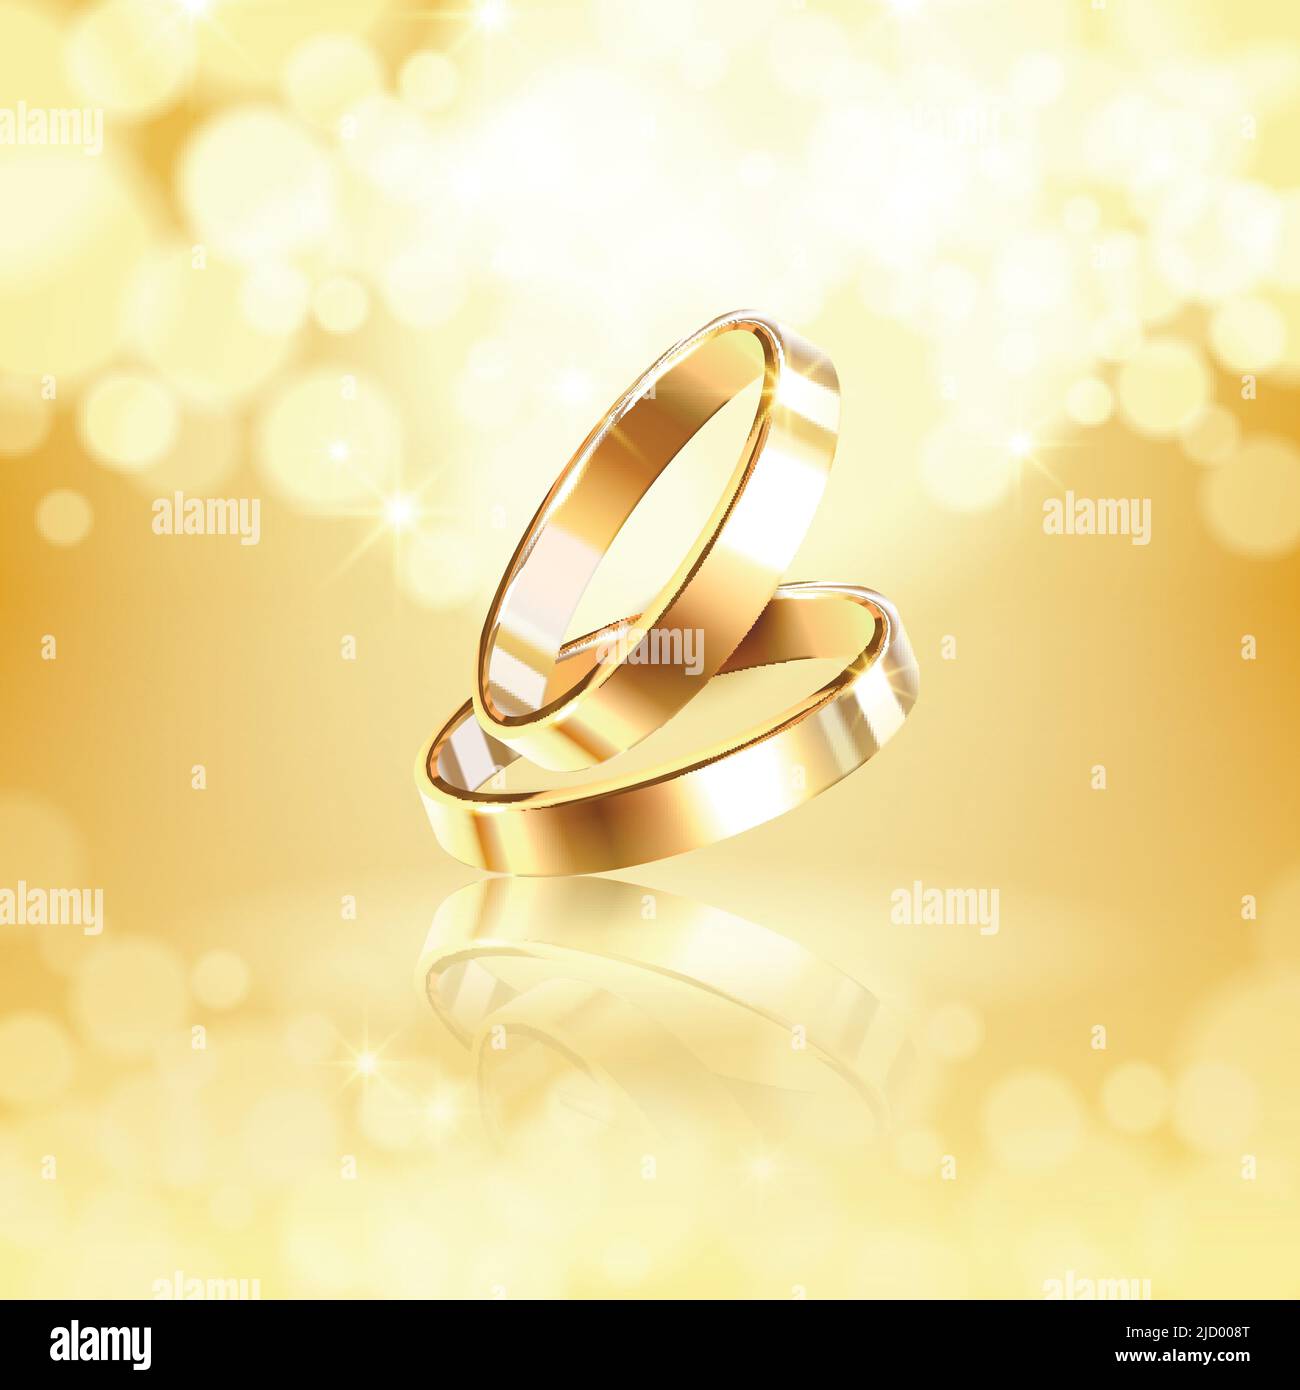 Luxuriöse goldene Komposition mit zwei glänzenden Eheringen auf glänzendem Hintergrund realistischer Vektor Illustration Stock Vektor